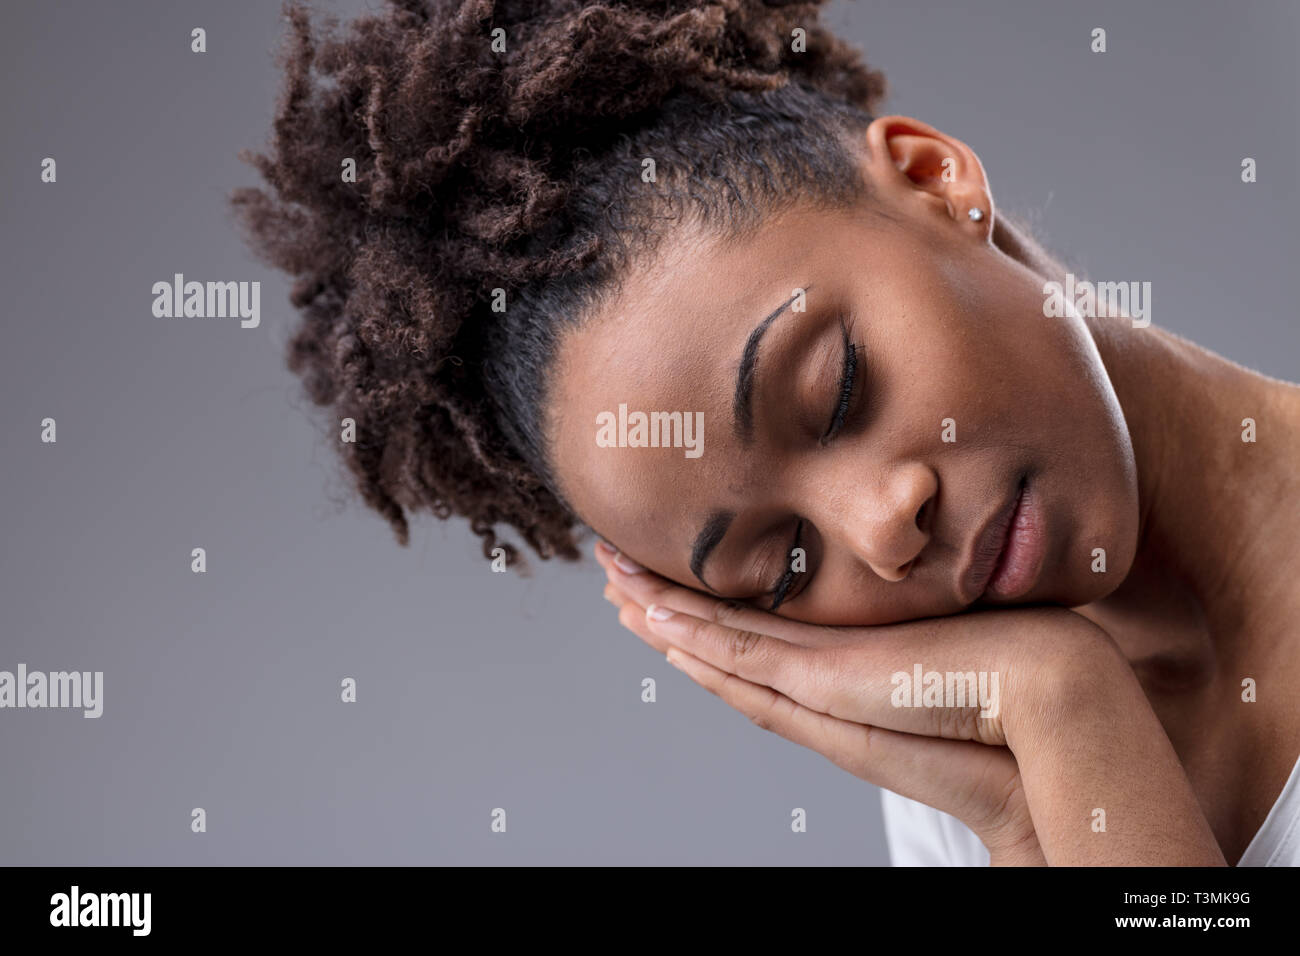 Müde junge Frau dösen mit ihren Kopf auf die Hände, schloss die Augen und eine heitere Ausdruck in einer Nahaufnahme 7/8 Portrait auf Grau mit Kopie Raum Stockfoto